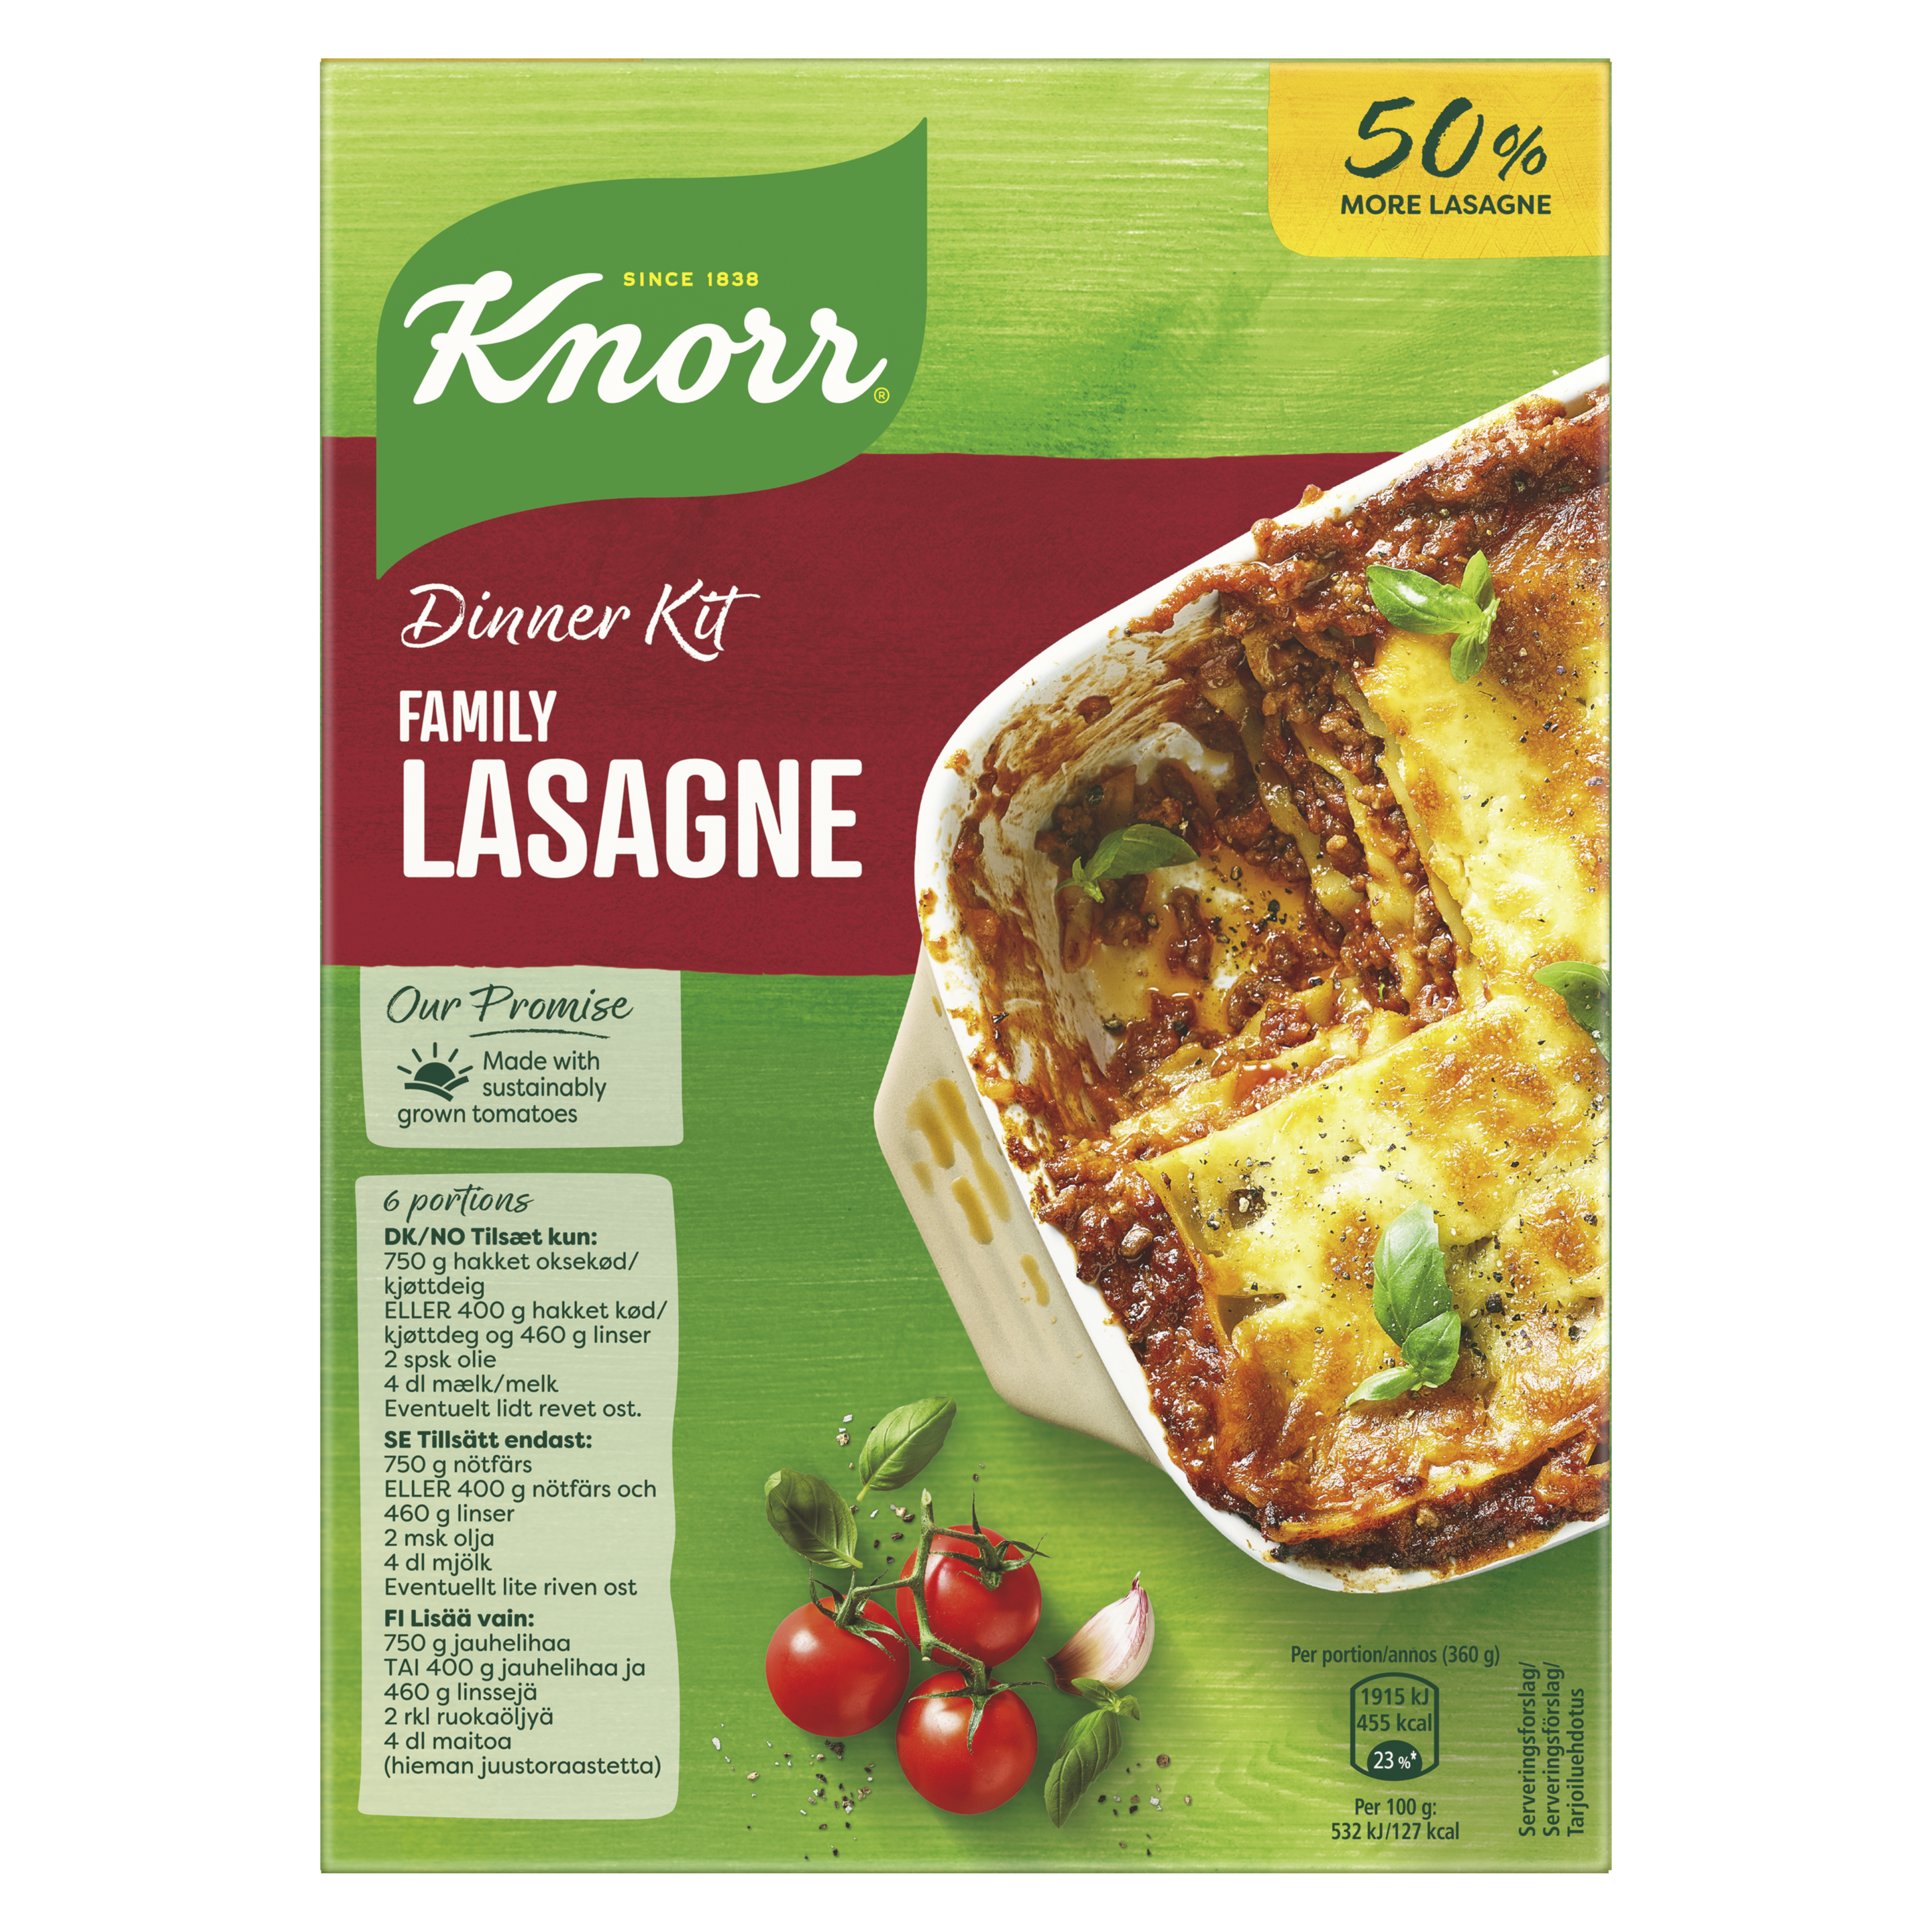 Dinner Kit Family Lasagne